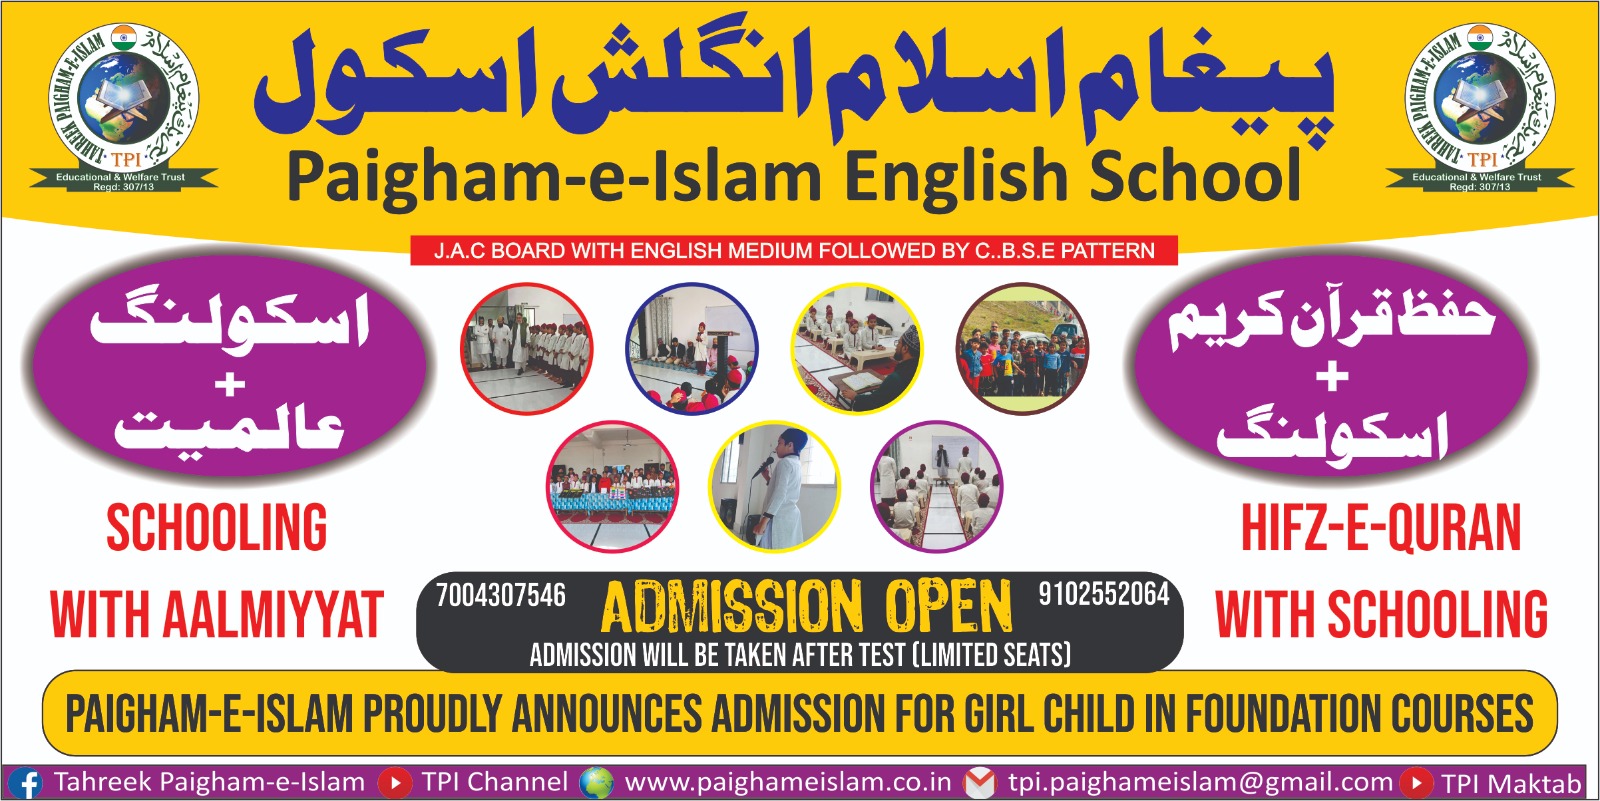 PAIGHAM-E-ISLAM ENGLISH SCHOOL